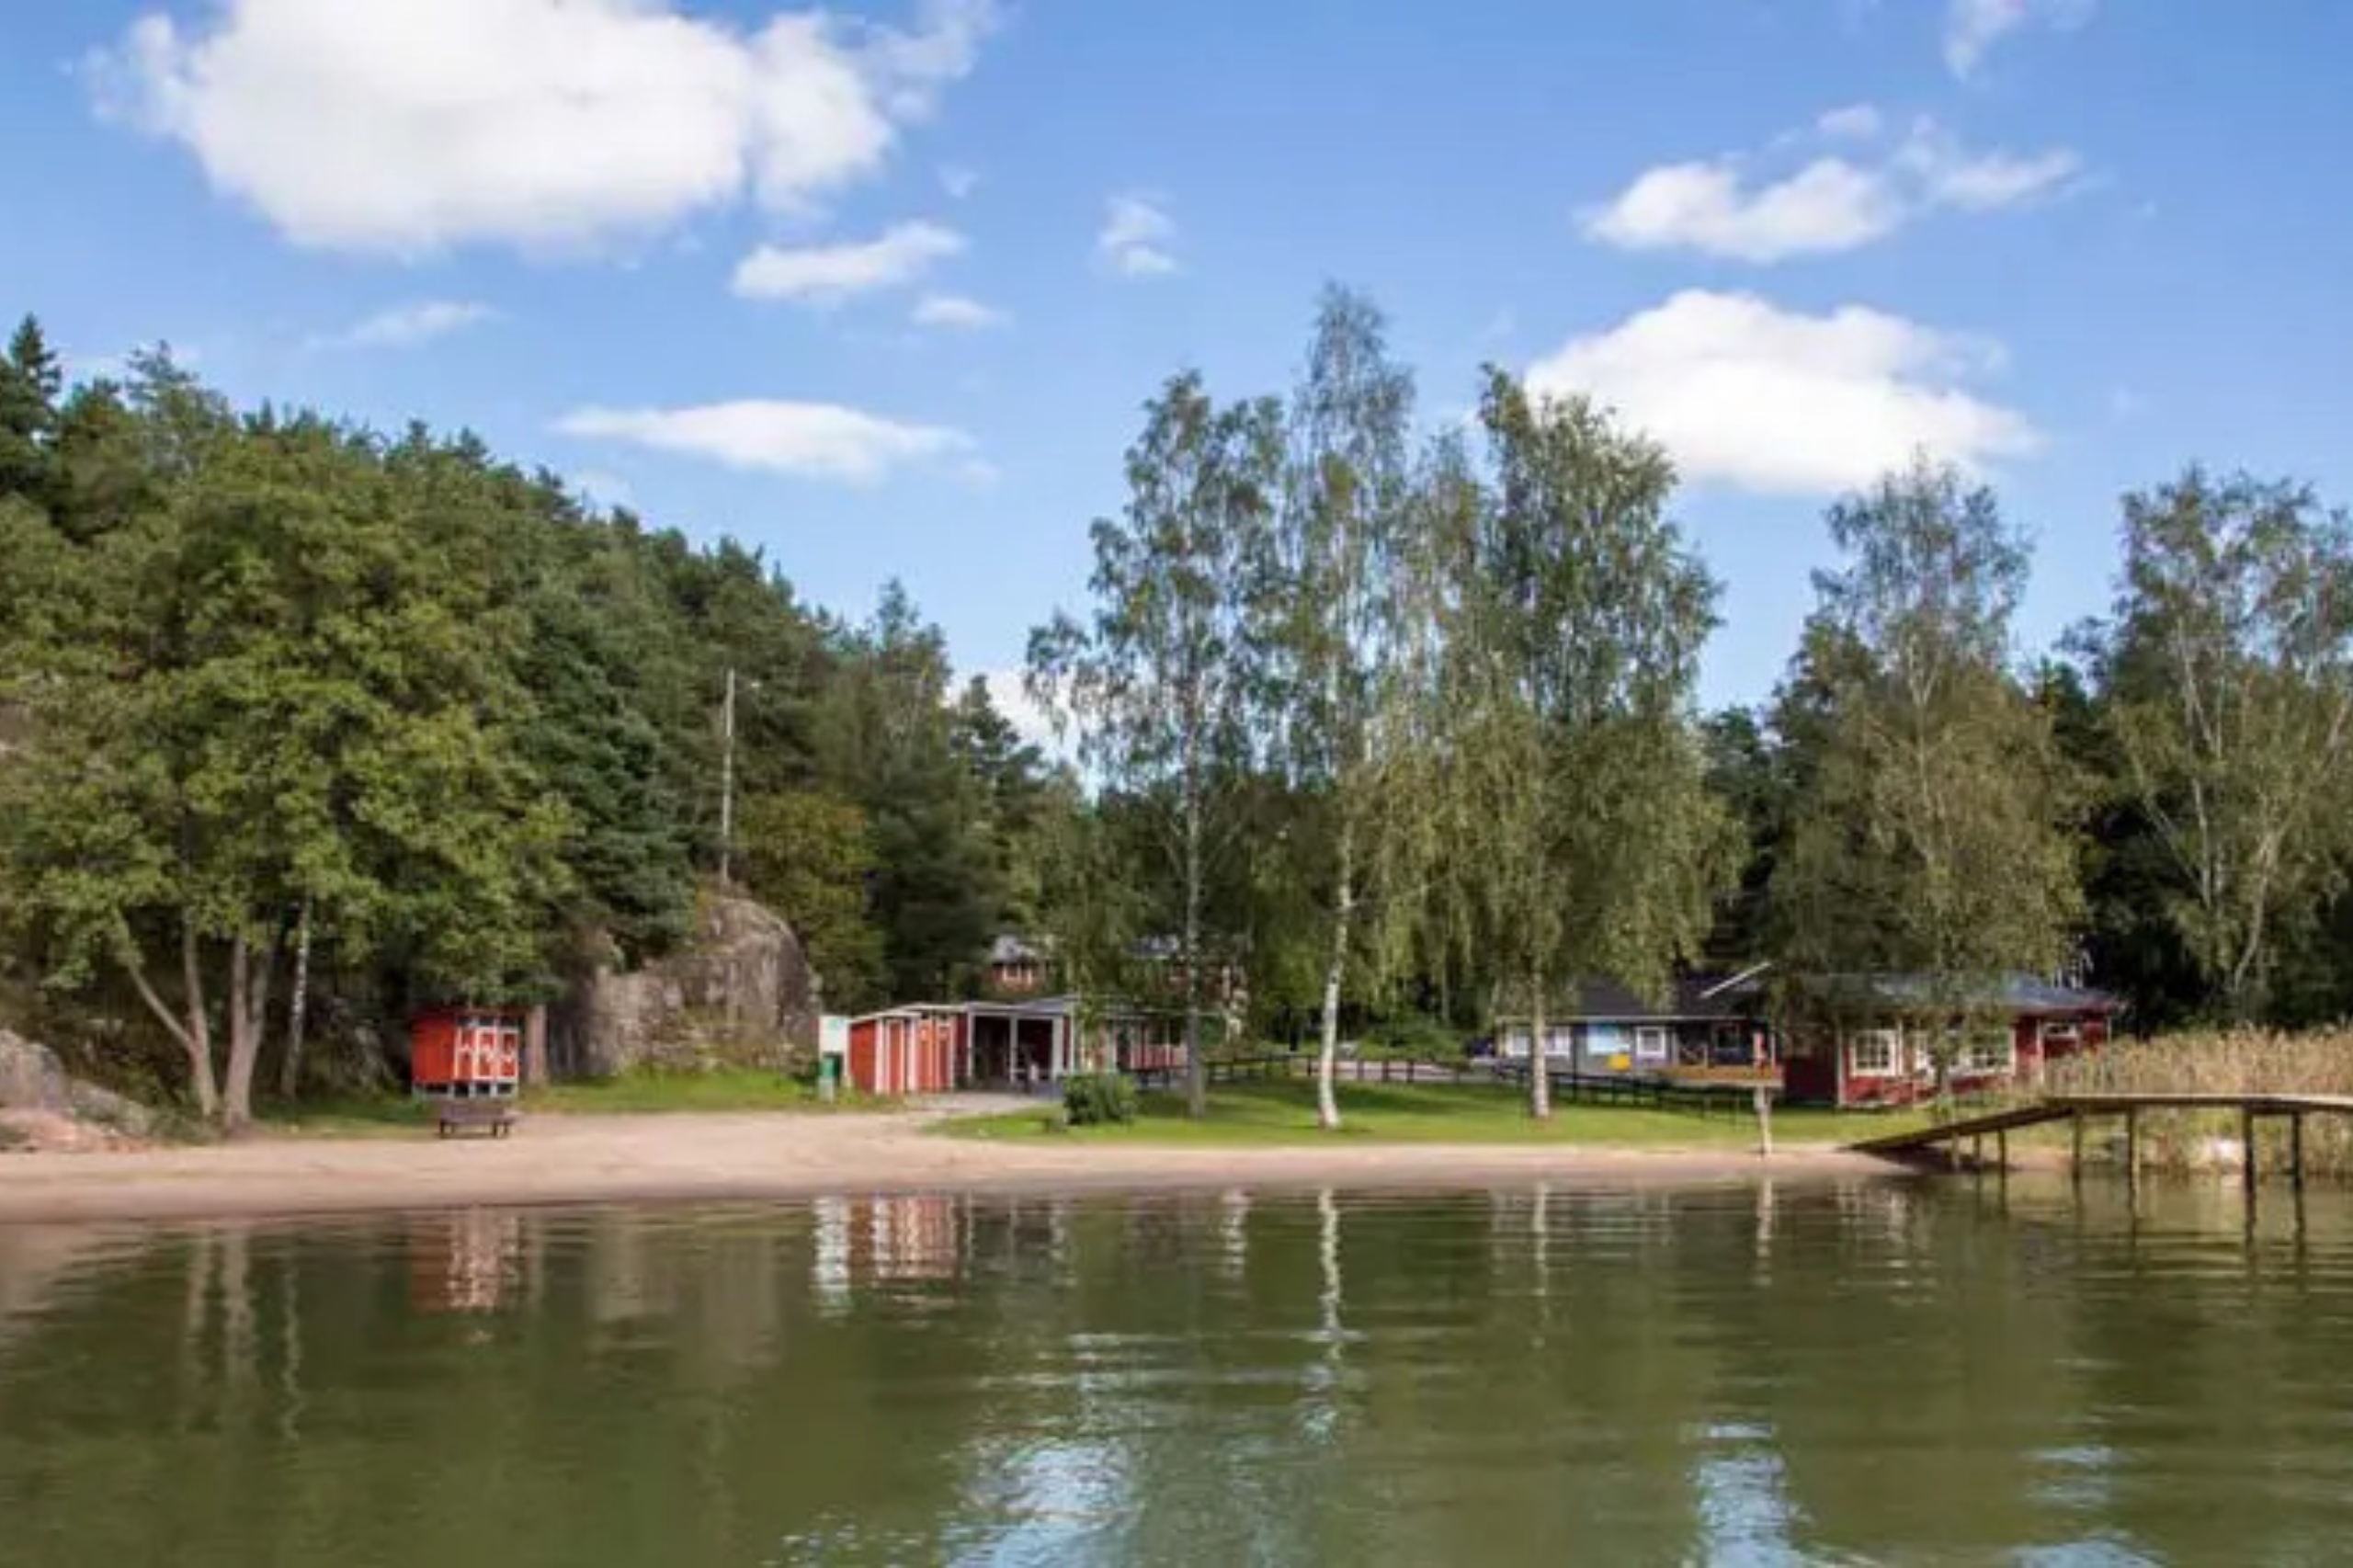 Magnifik utsikt på Solliden Camping i den finska skärgården.